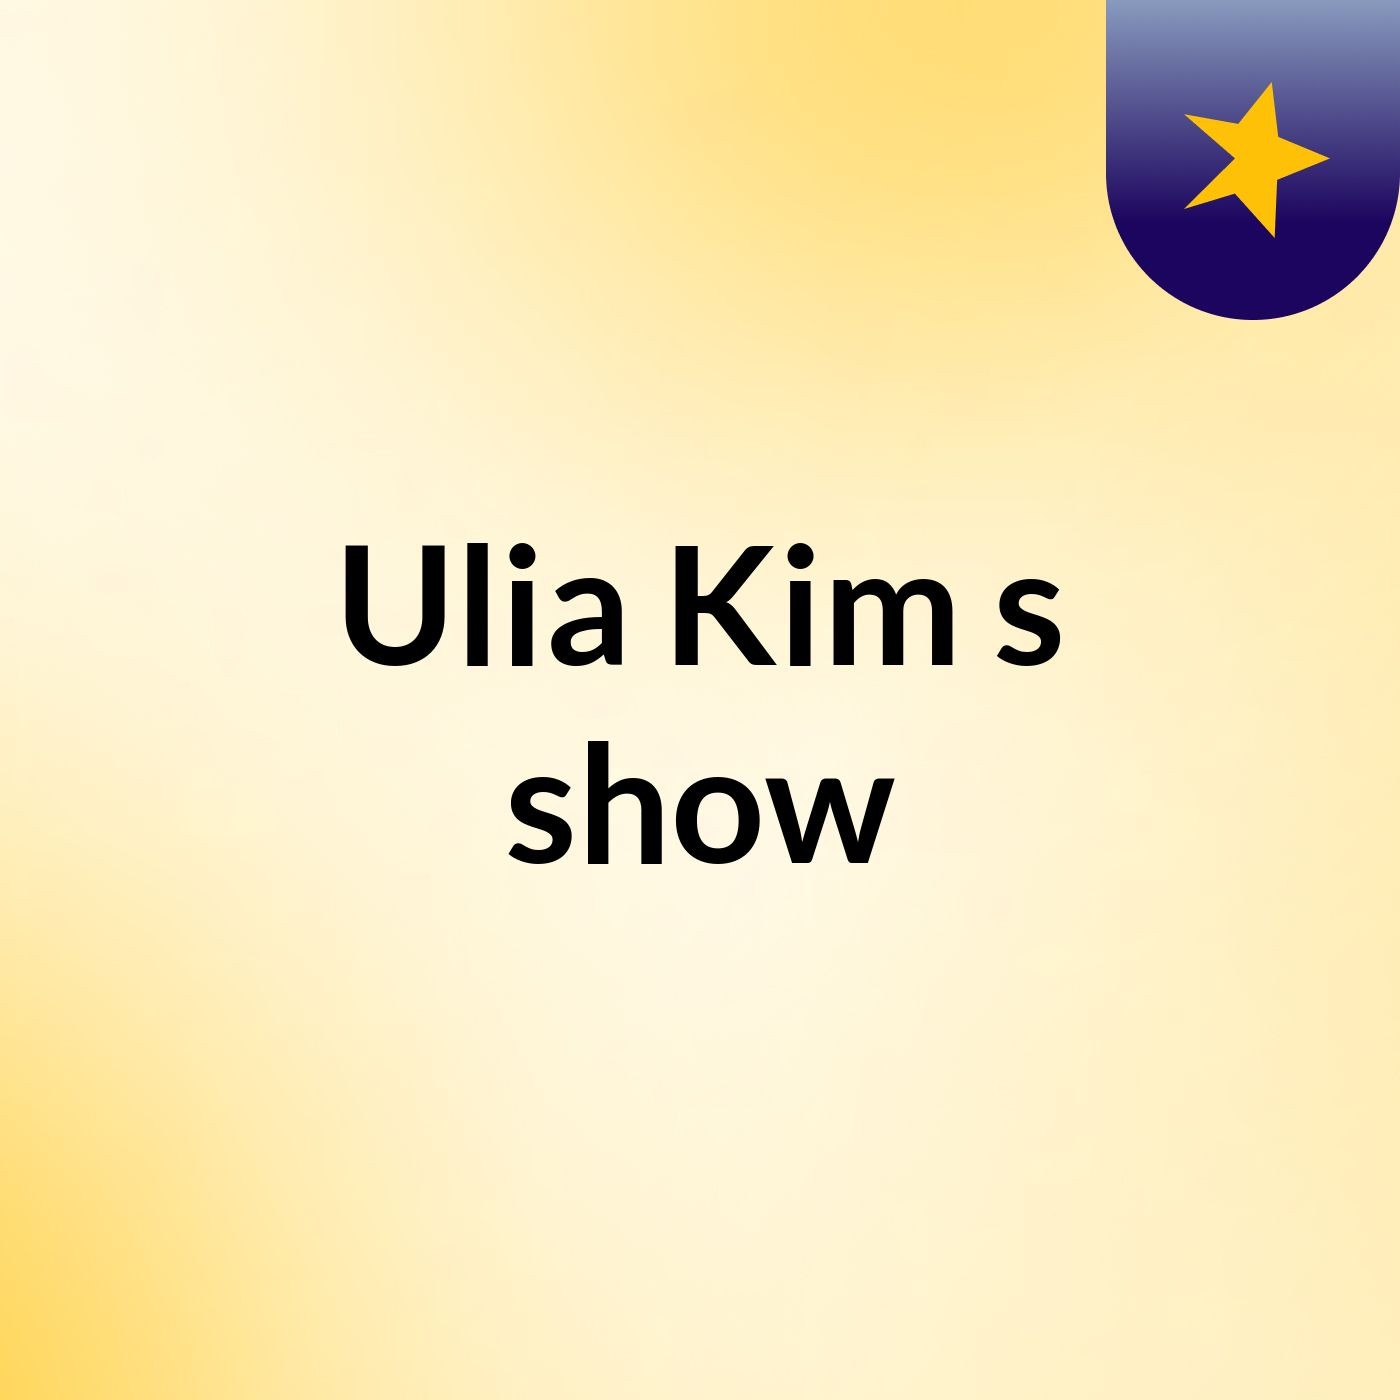 Ulia Kim's show